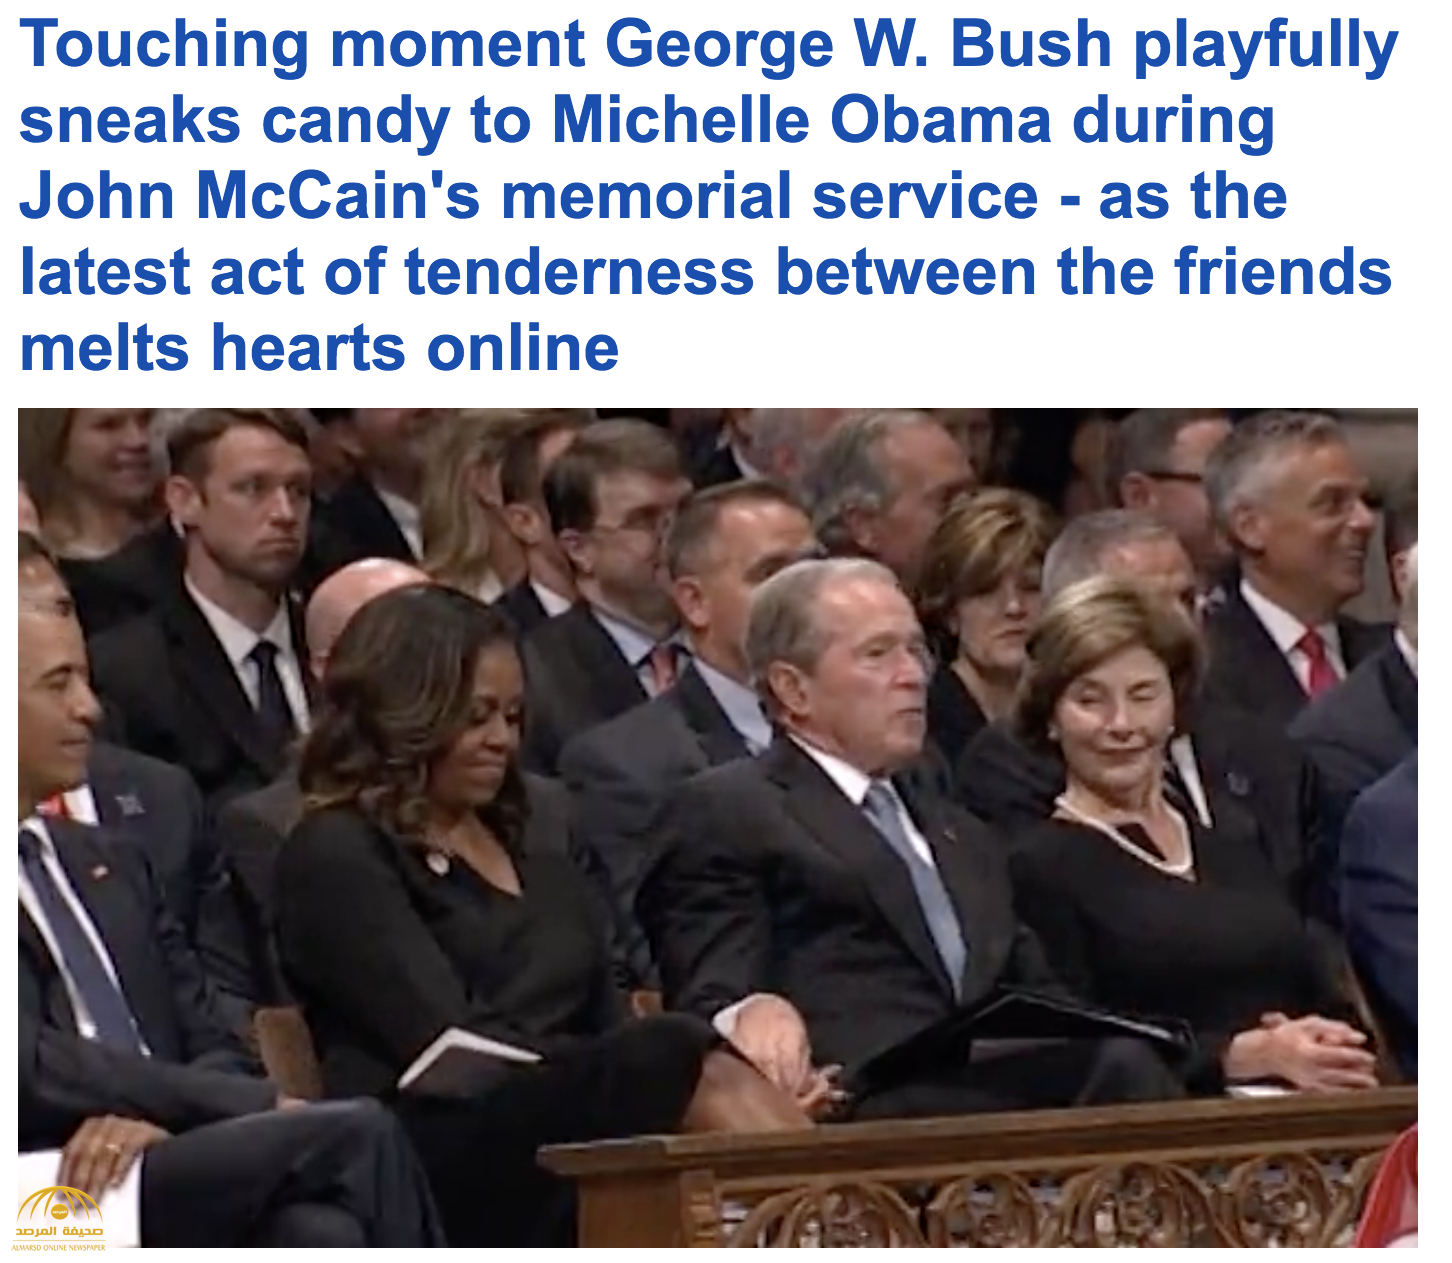 بالفيديو : "حميمية" جورج بوش وميشيل أوباما في جنازة ماكين .. شاهد: ردة فعل أوباما!